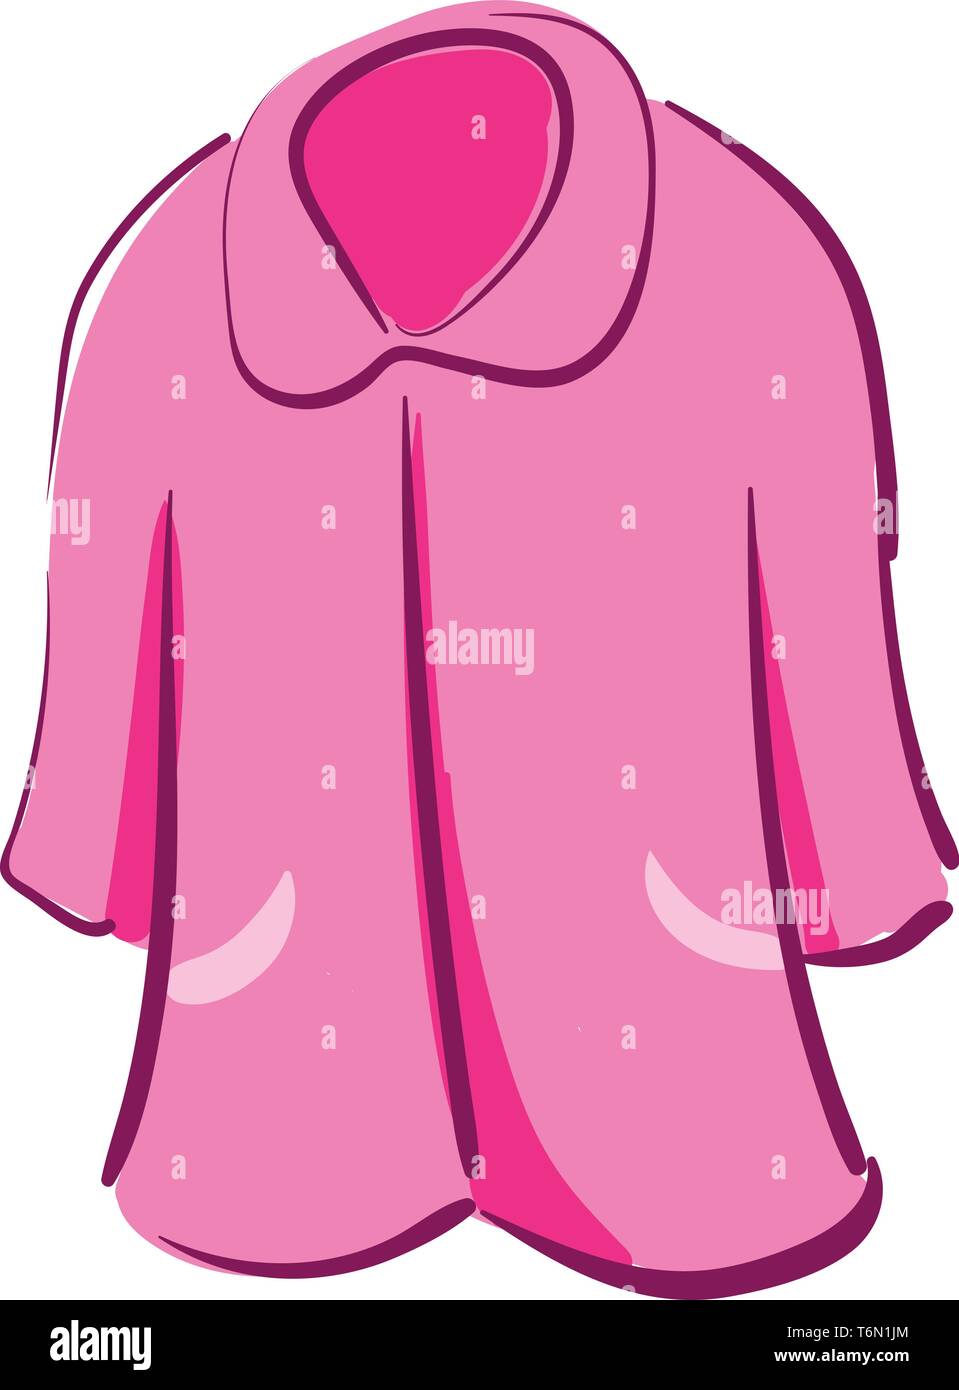 Clipart eines Showcase rosafarbenen Nachthemd mit stellringen Kontrast  getäfelten Rohrleitungen und genähte Details über den weißen Hintergrund  vector Farbe drawi Stock-Vektorgrafik - Alamy